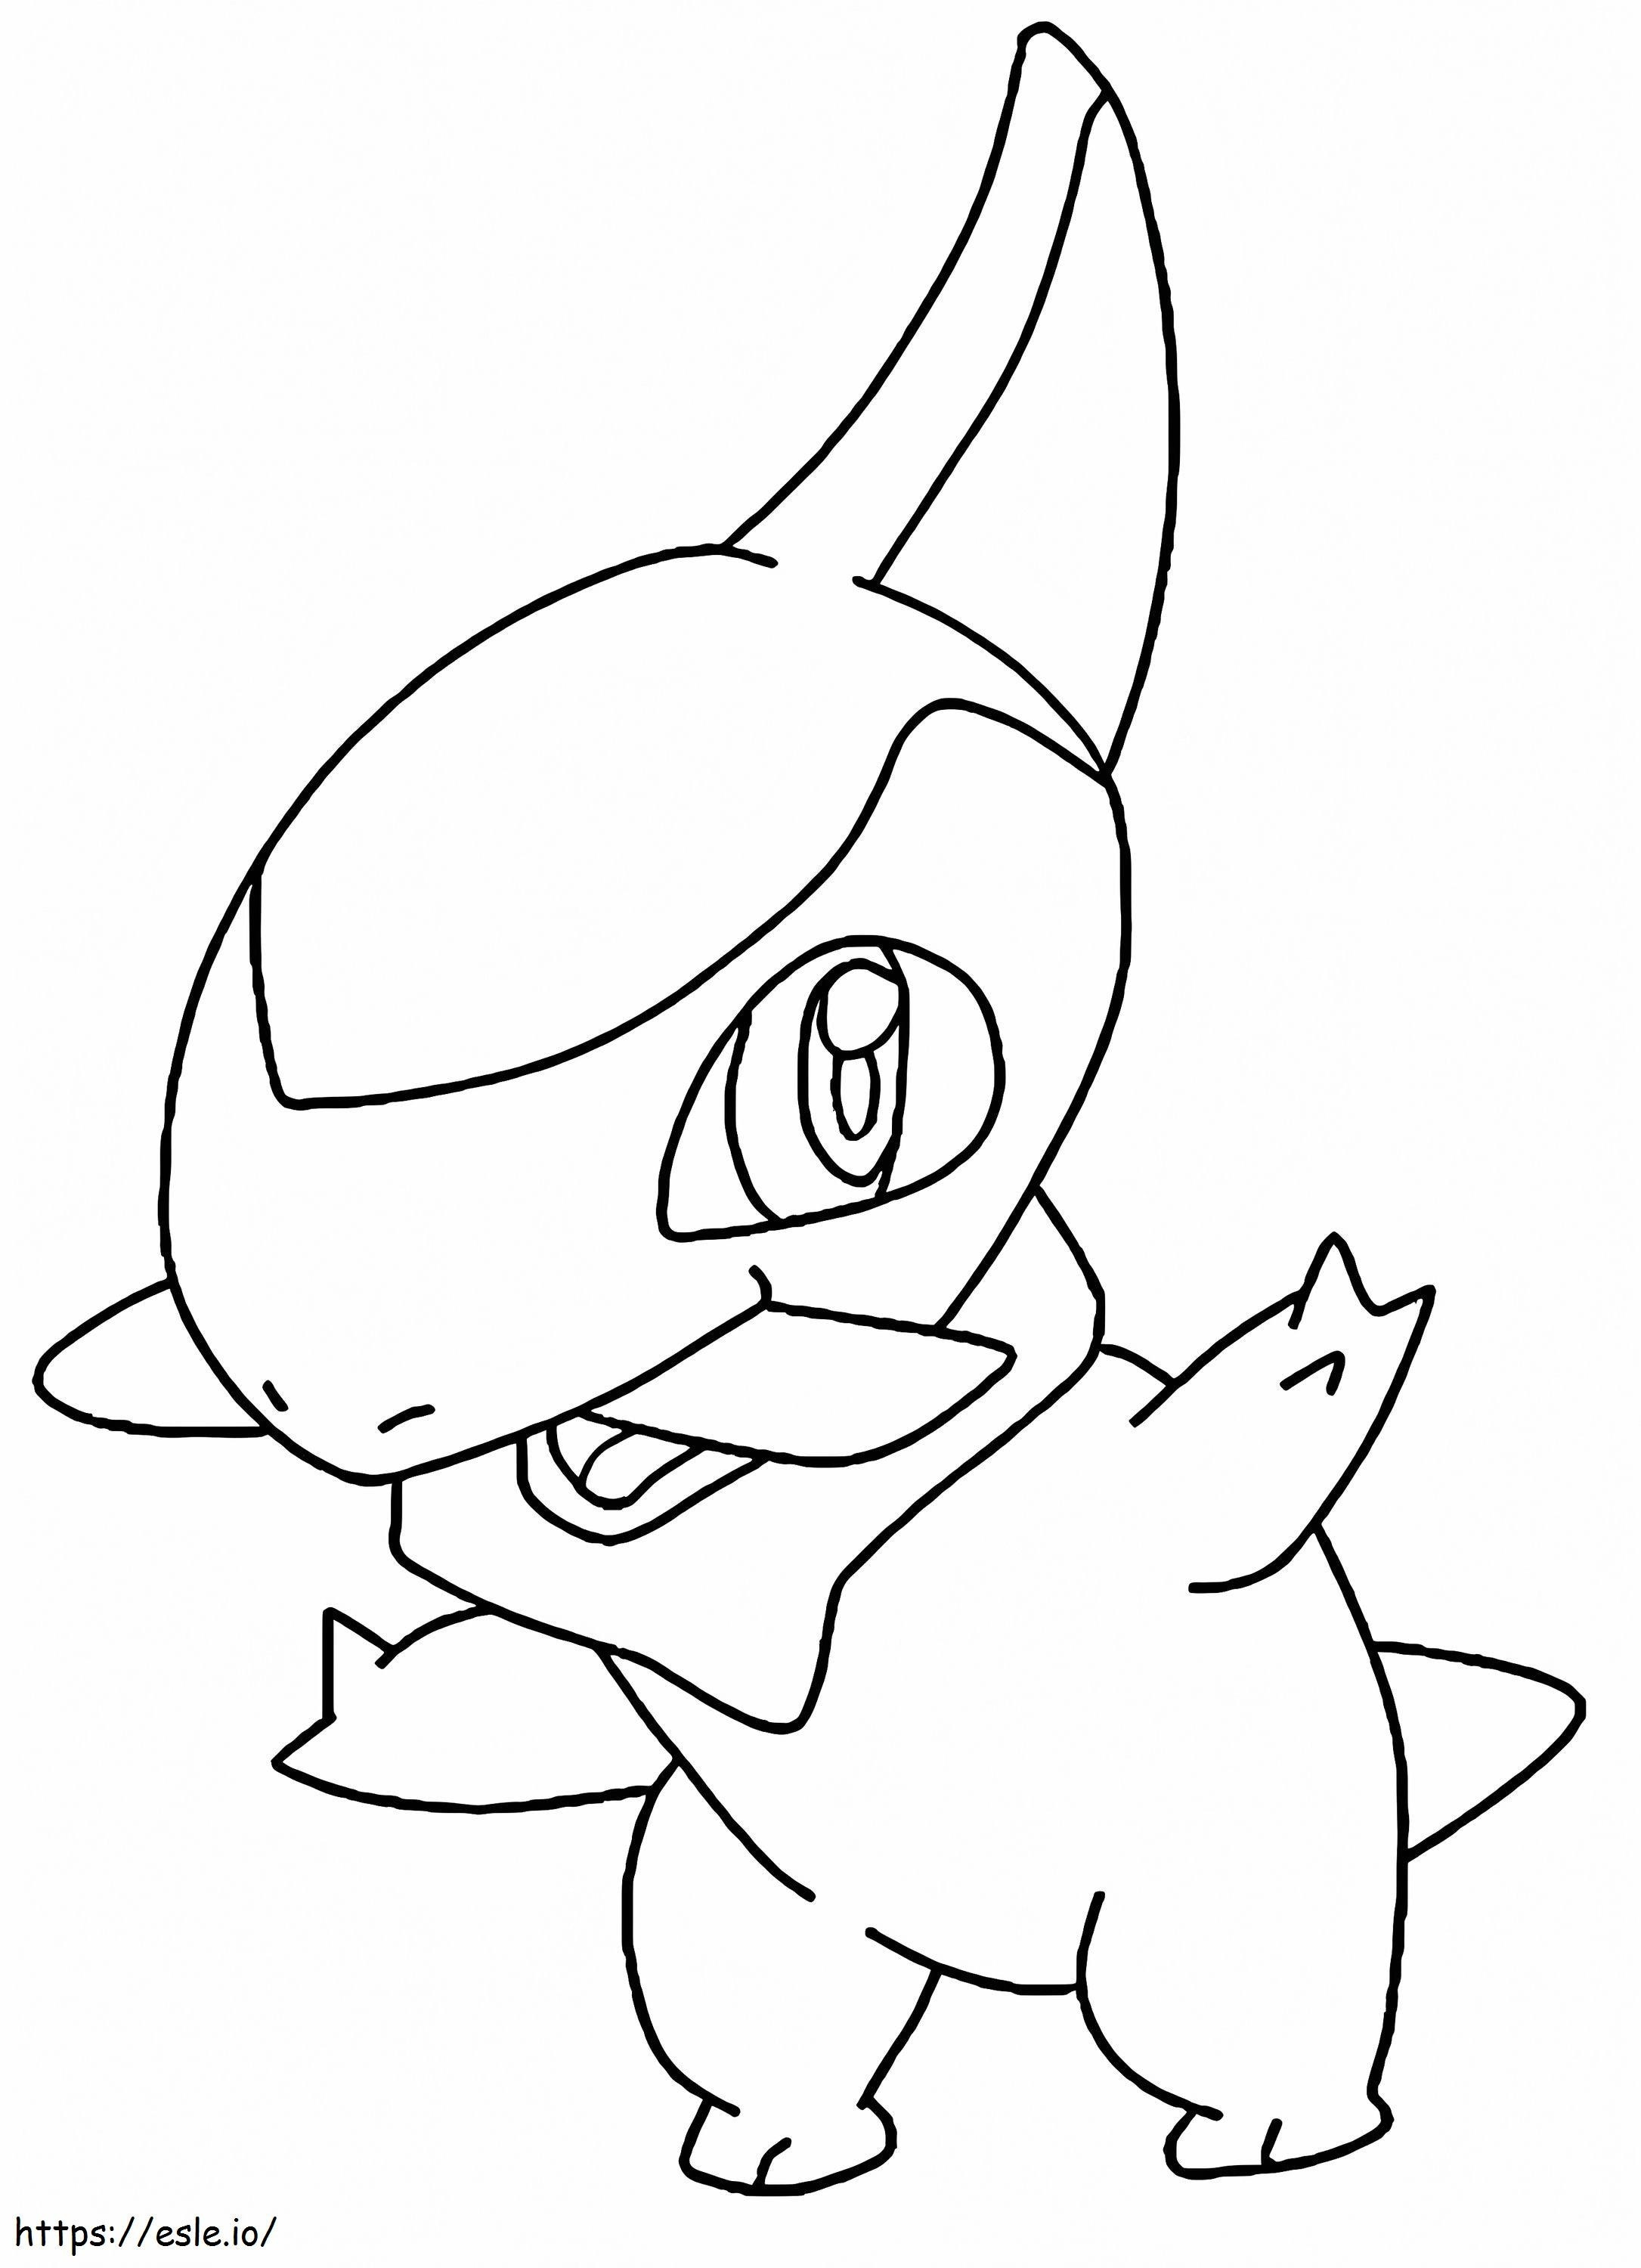 Coloriage Axew Pokemon 4 à imprimer dessin